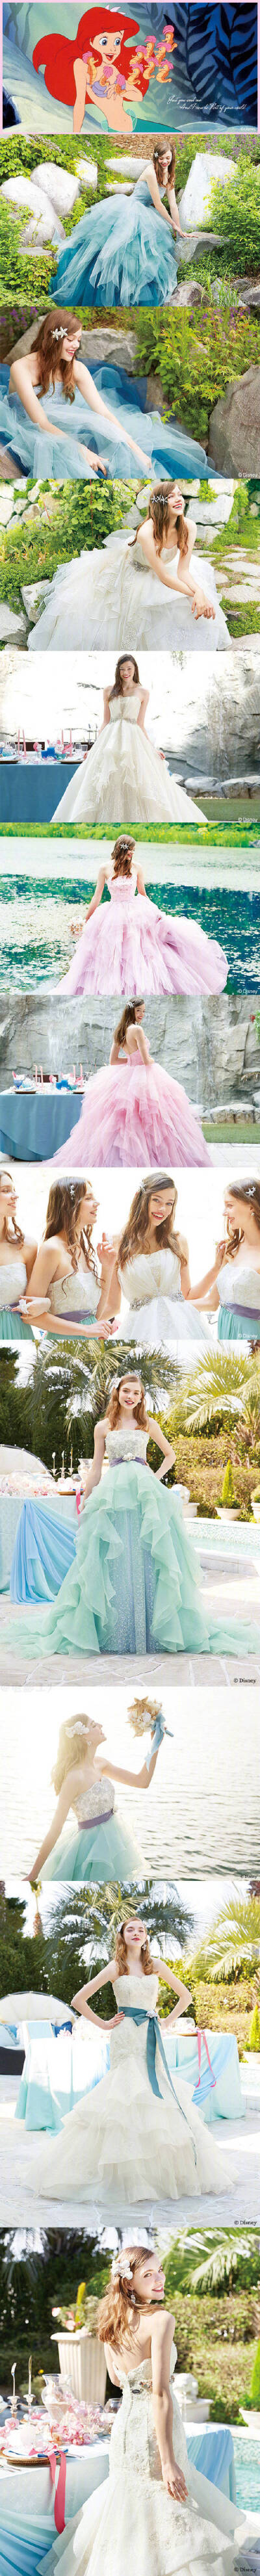 迪士尼和日本婚纱品牌KURAUDIA联名发布了新娘礼服